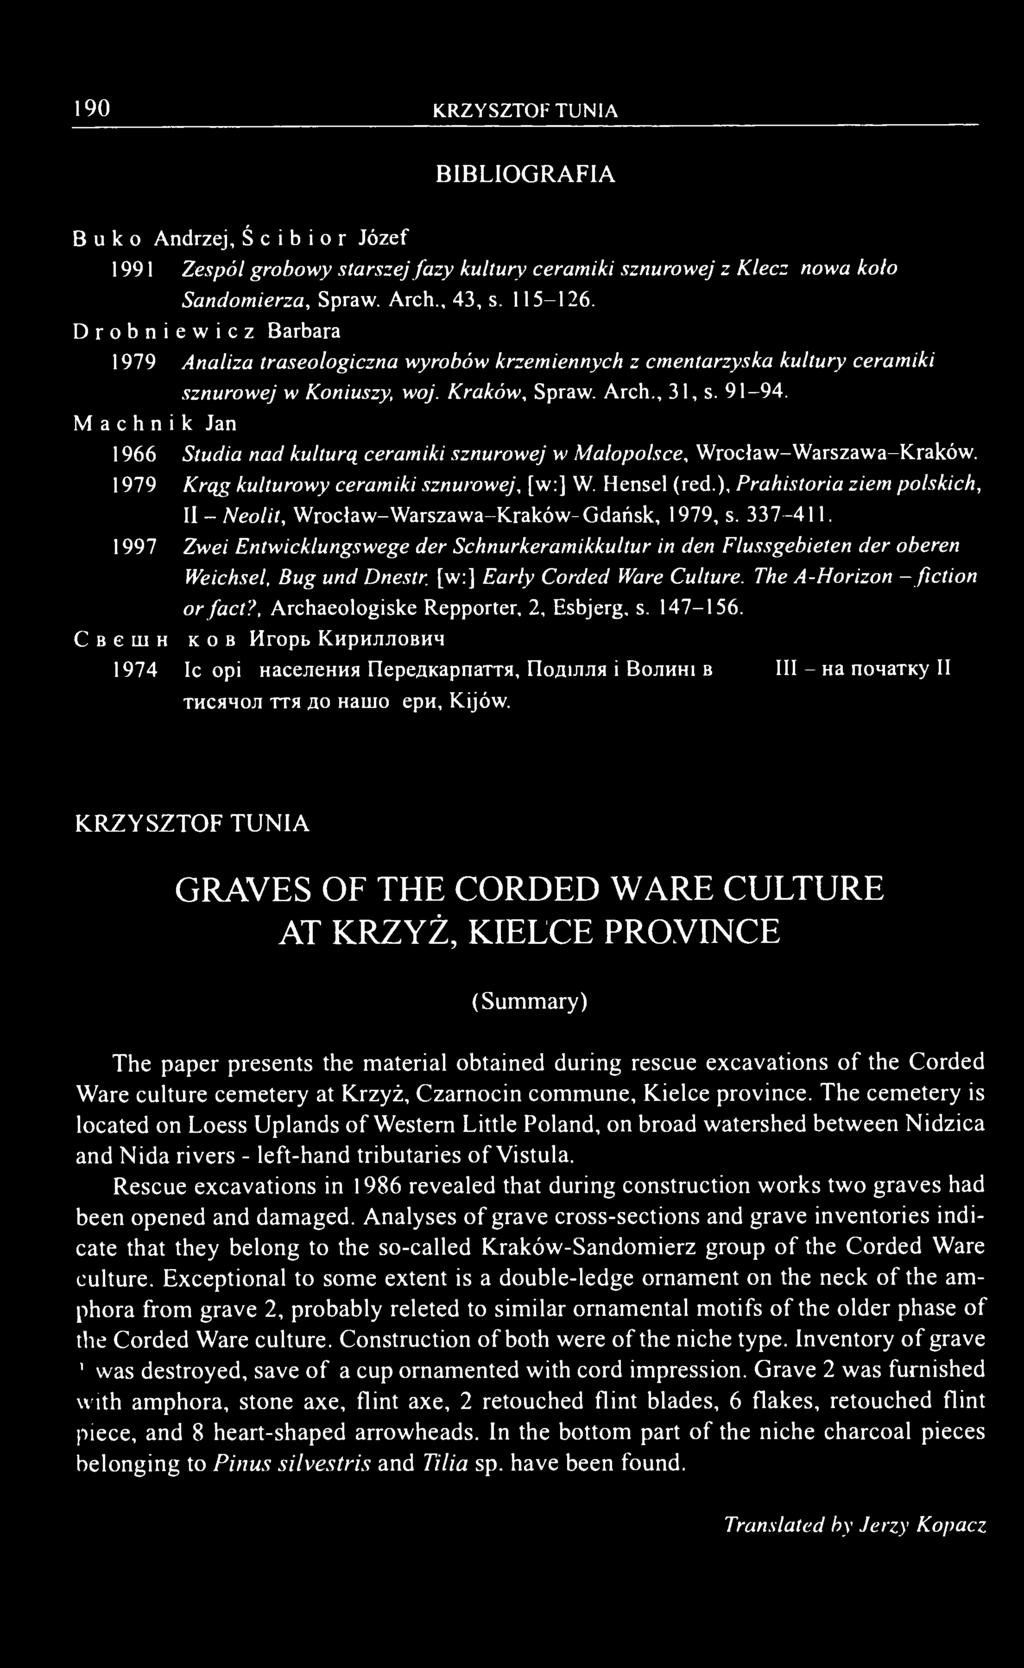 Machnik Jan 1966 Studia nad kulturą ceramiki sznurowej w Małopolsce, Wrocław-Warszawa-Kraków. 1979 Krąg kulturowy ceramiki sznurowej, [w:] W. Hensel (red.